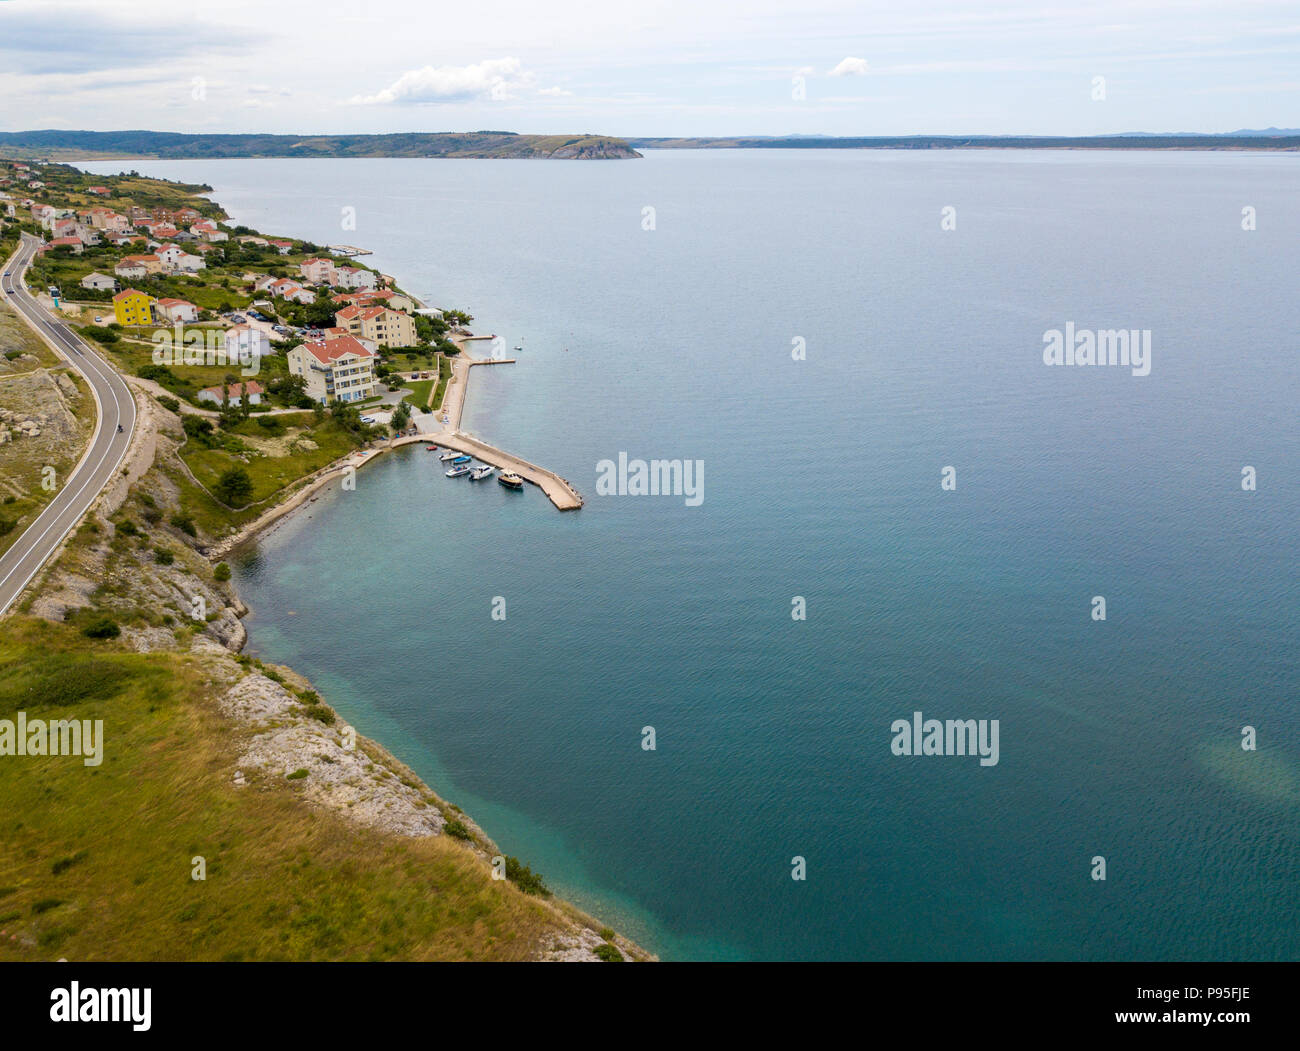 Luftaufnahme der Insel Pag, Kroatien, Kroatische Straßen und Küste, die Häuser und Gebäude der kleinen Stadt von molunat. Klippe mit Blick auf das Meer Stockfoto